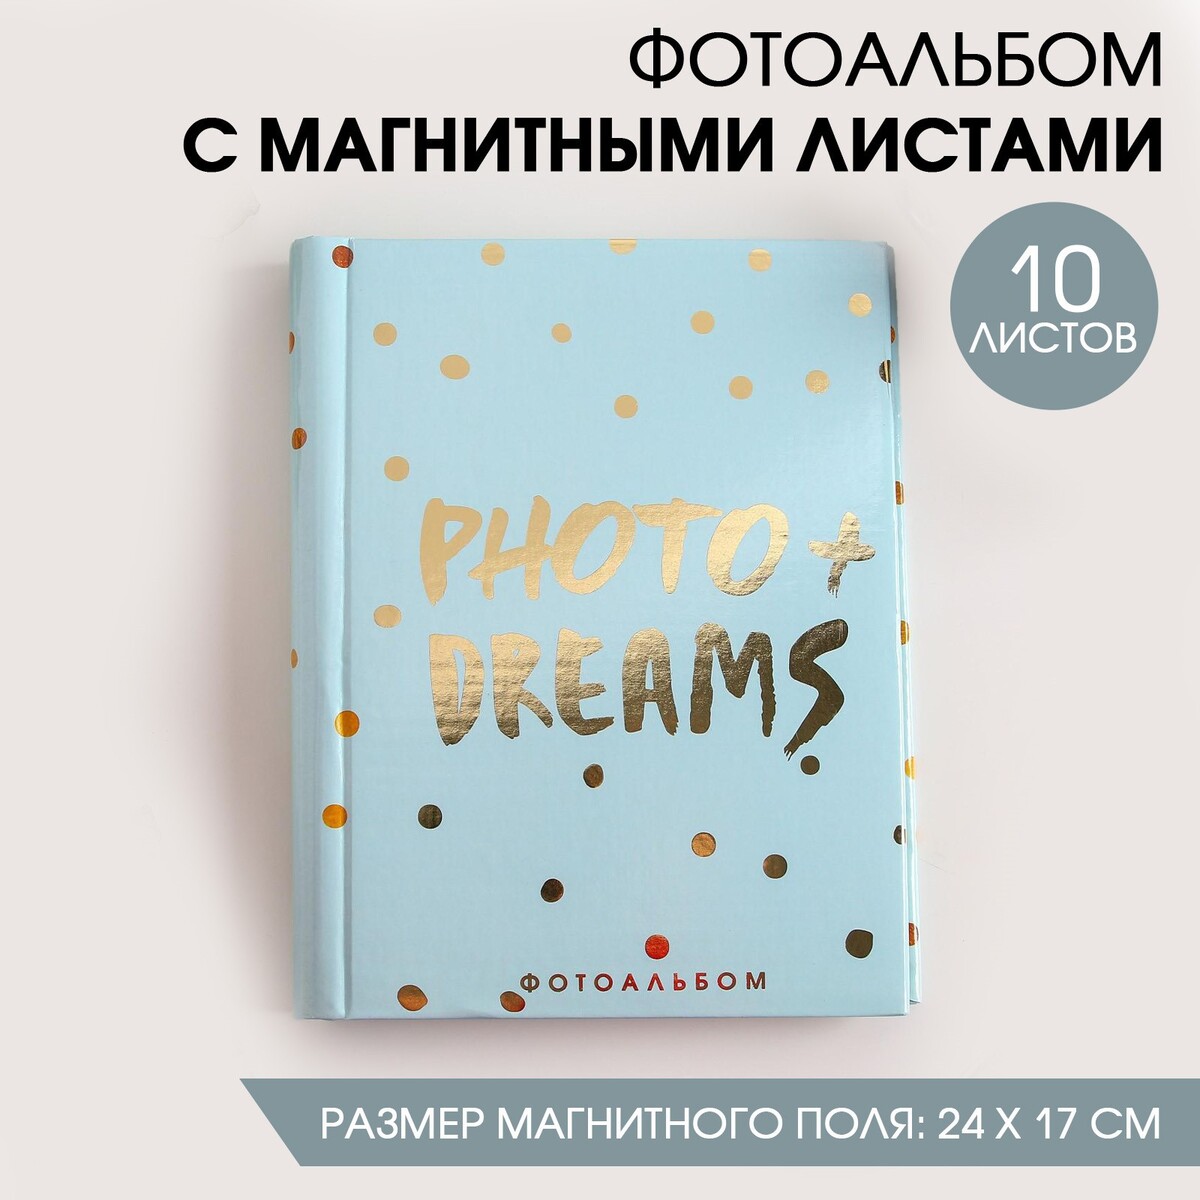 Фотоальбом photo + dreams, 10 магнитных листов lucid dreams